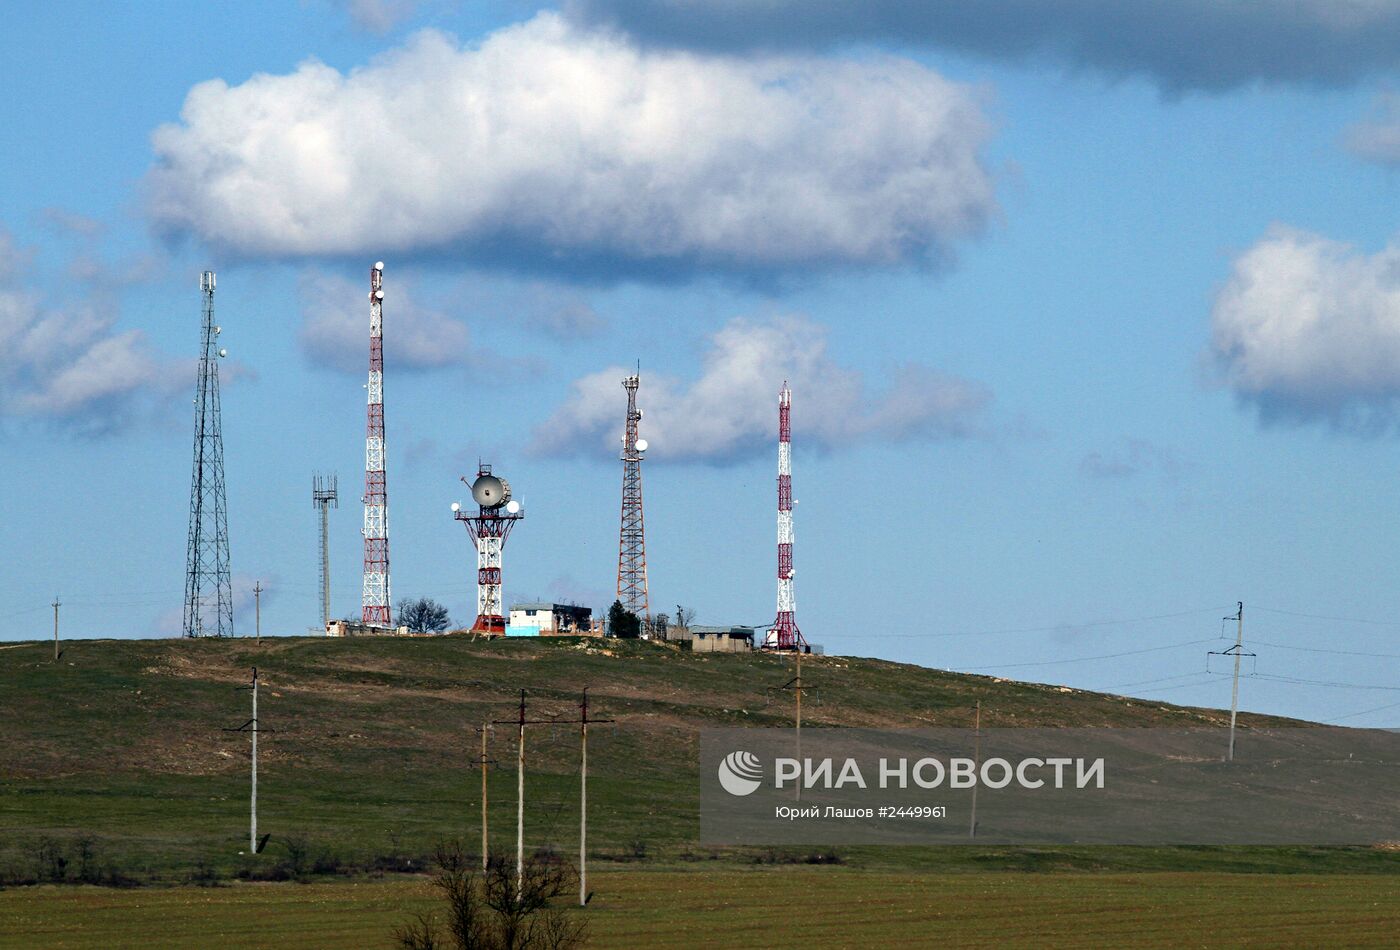 Вышки сотовой связи украинских сотовых операторов в Крыму